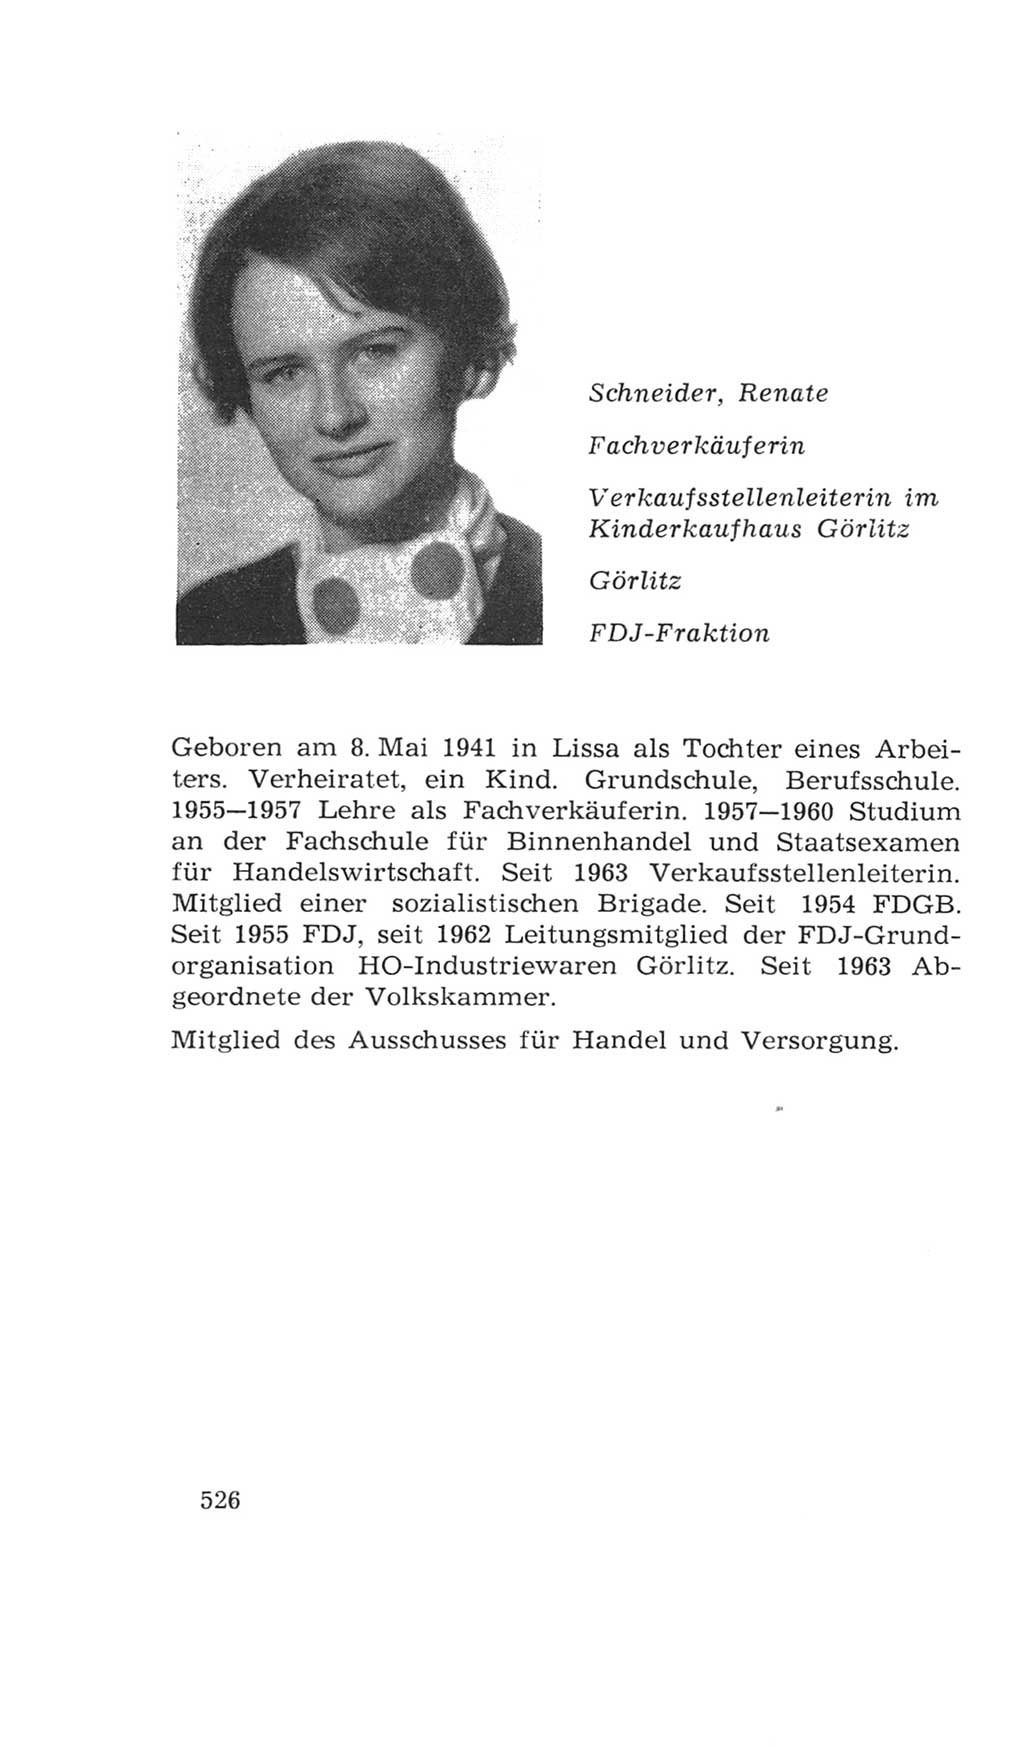 Volkskammer (VK) der Deutschen Demokratischen Republik (DDR), 4. Wahlperiode 1963-1967, Seite 526 (VK. DDR 4. WP. 1963-1967, S. 526)